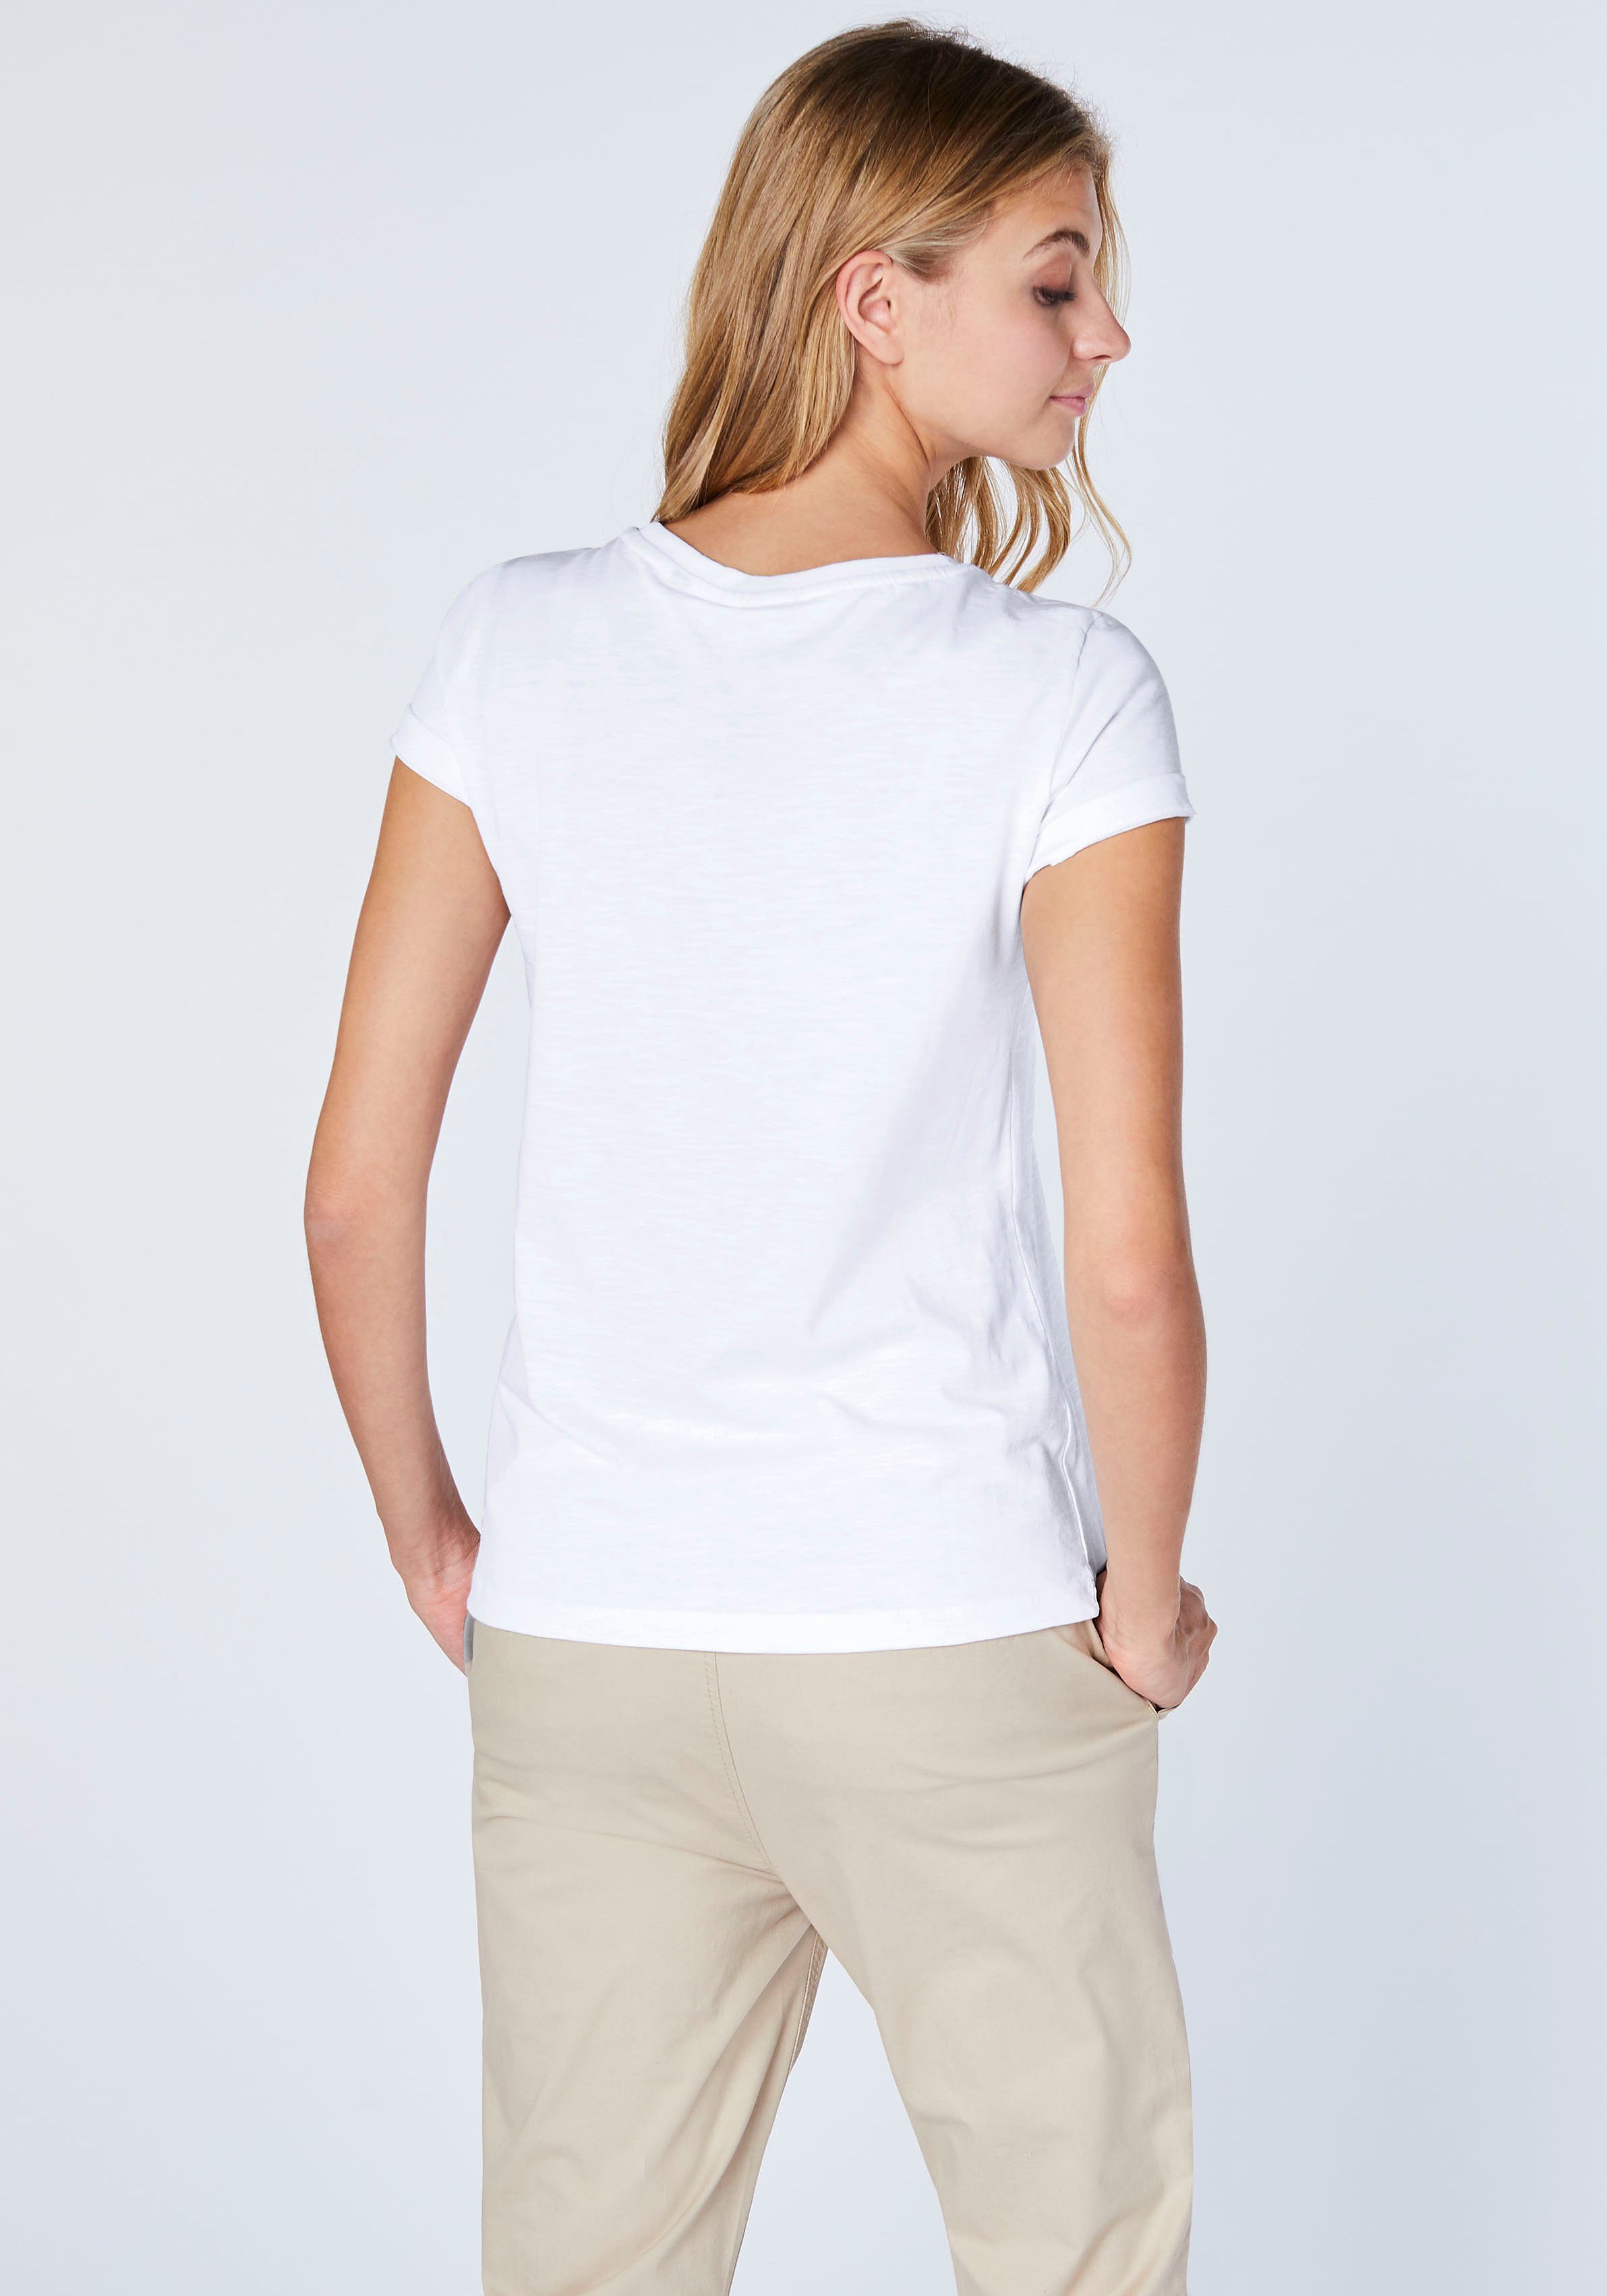 T-Shirt Bright Chiemsee White